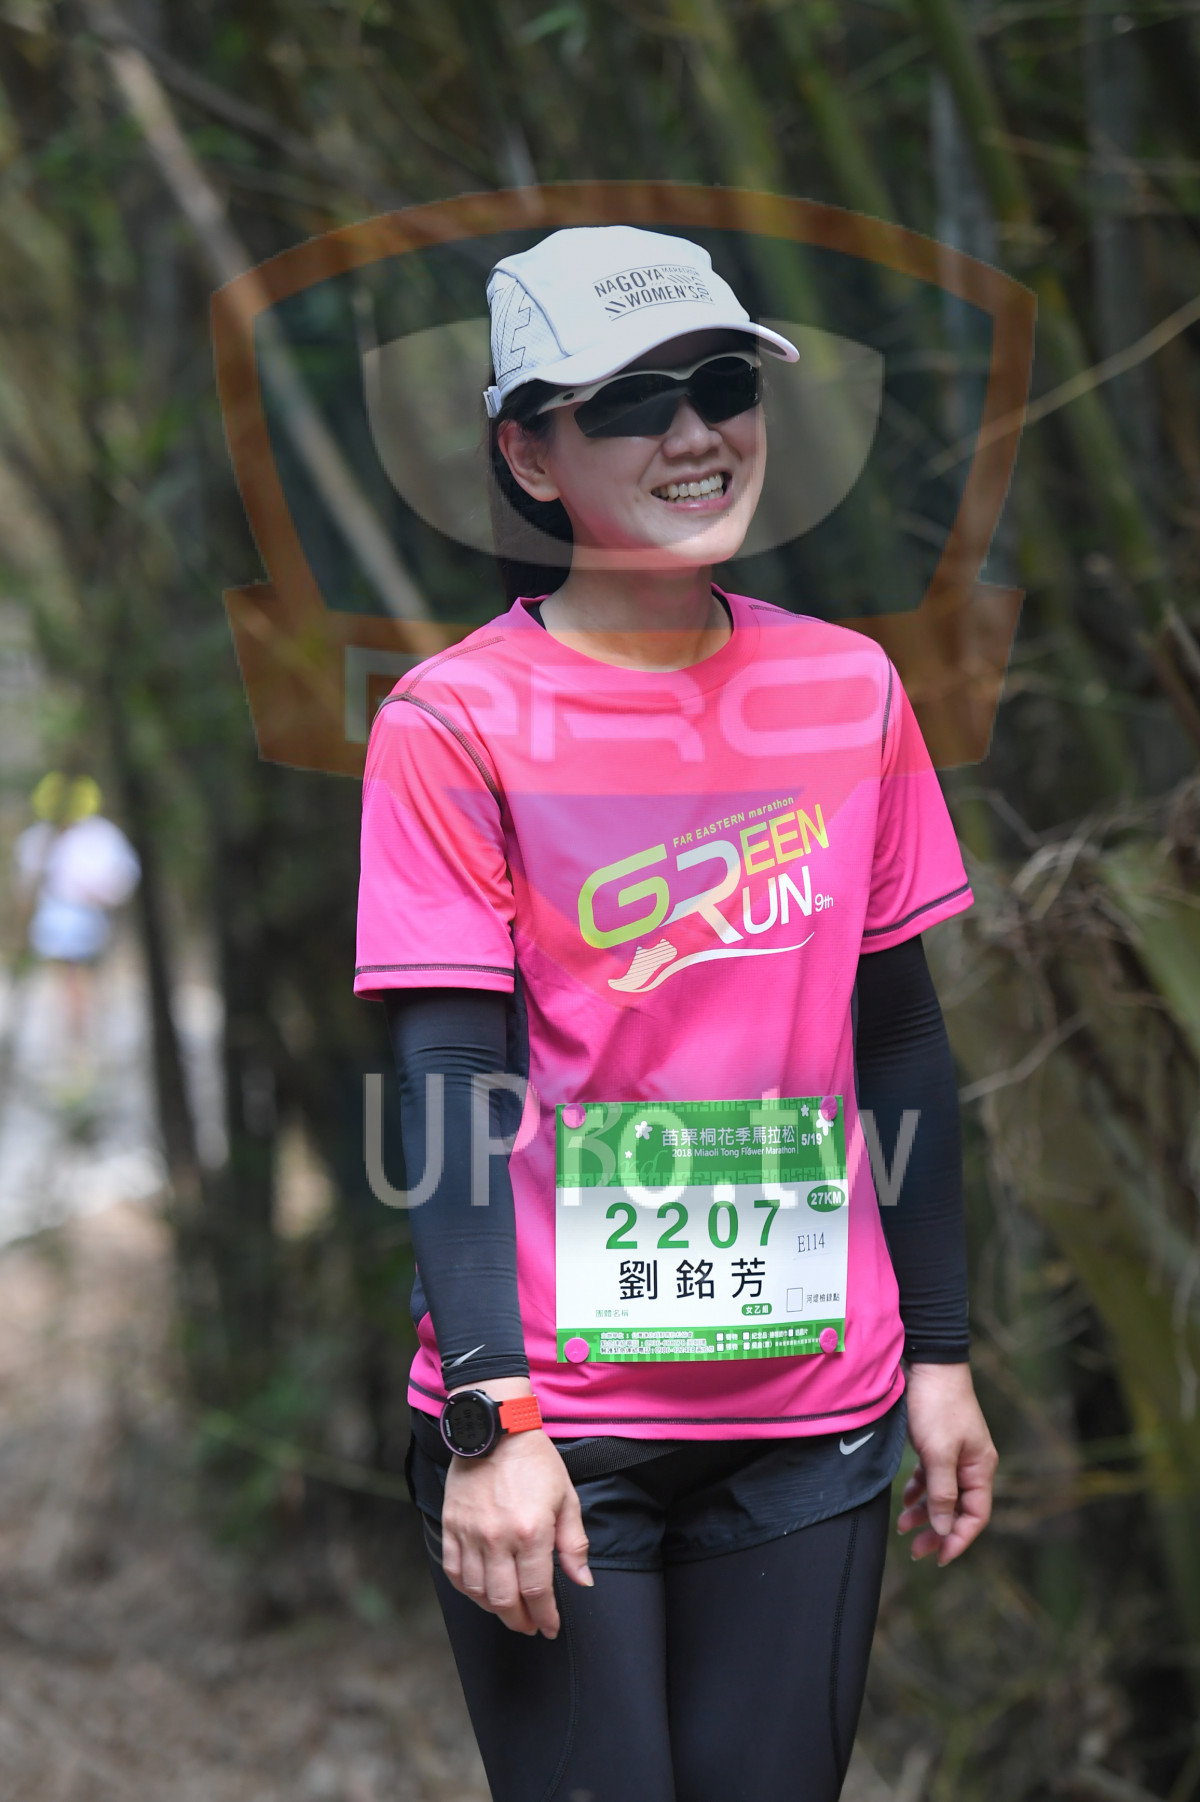 기 NAGOYA .,SWOMEN,EEN,UN,FAR EASTERN narathon,*,2018 Miacli Tong Ftes Marathon,5/19,2207D,,27KM|綠色隧道2|中年人